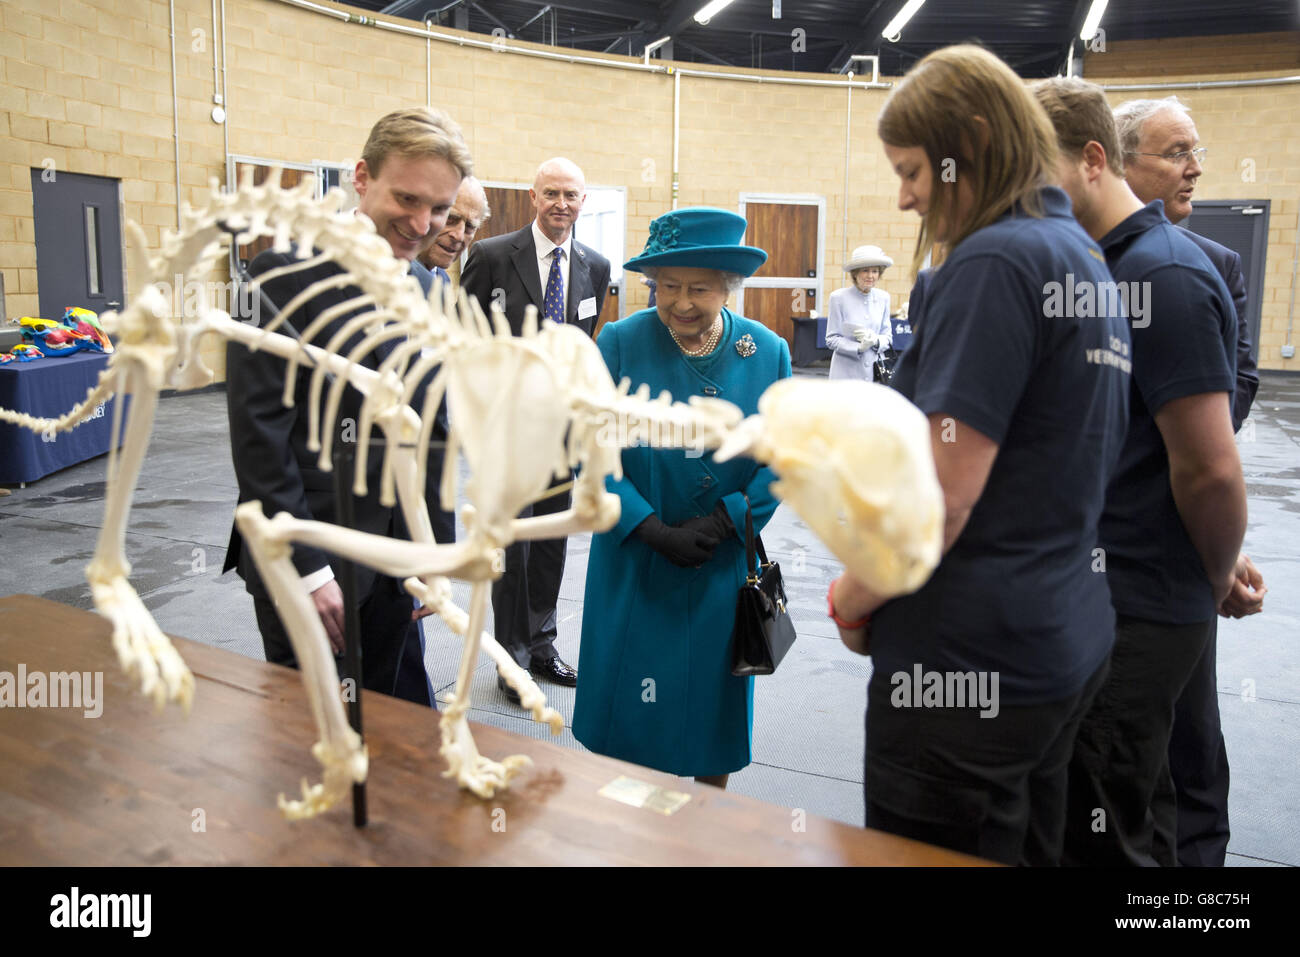 La reine Elizabeth II et le duc d'Édimbourg visitent le bâtiment des compétences cliniques pour les grands animaux de l'Université de Surrey à Guildford, dans le Surrey, où elle a officiellement ouvert une nouvelle école vétérinaire de pointe. Banque D'Images